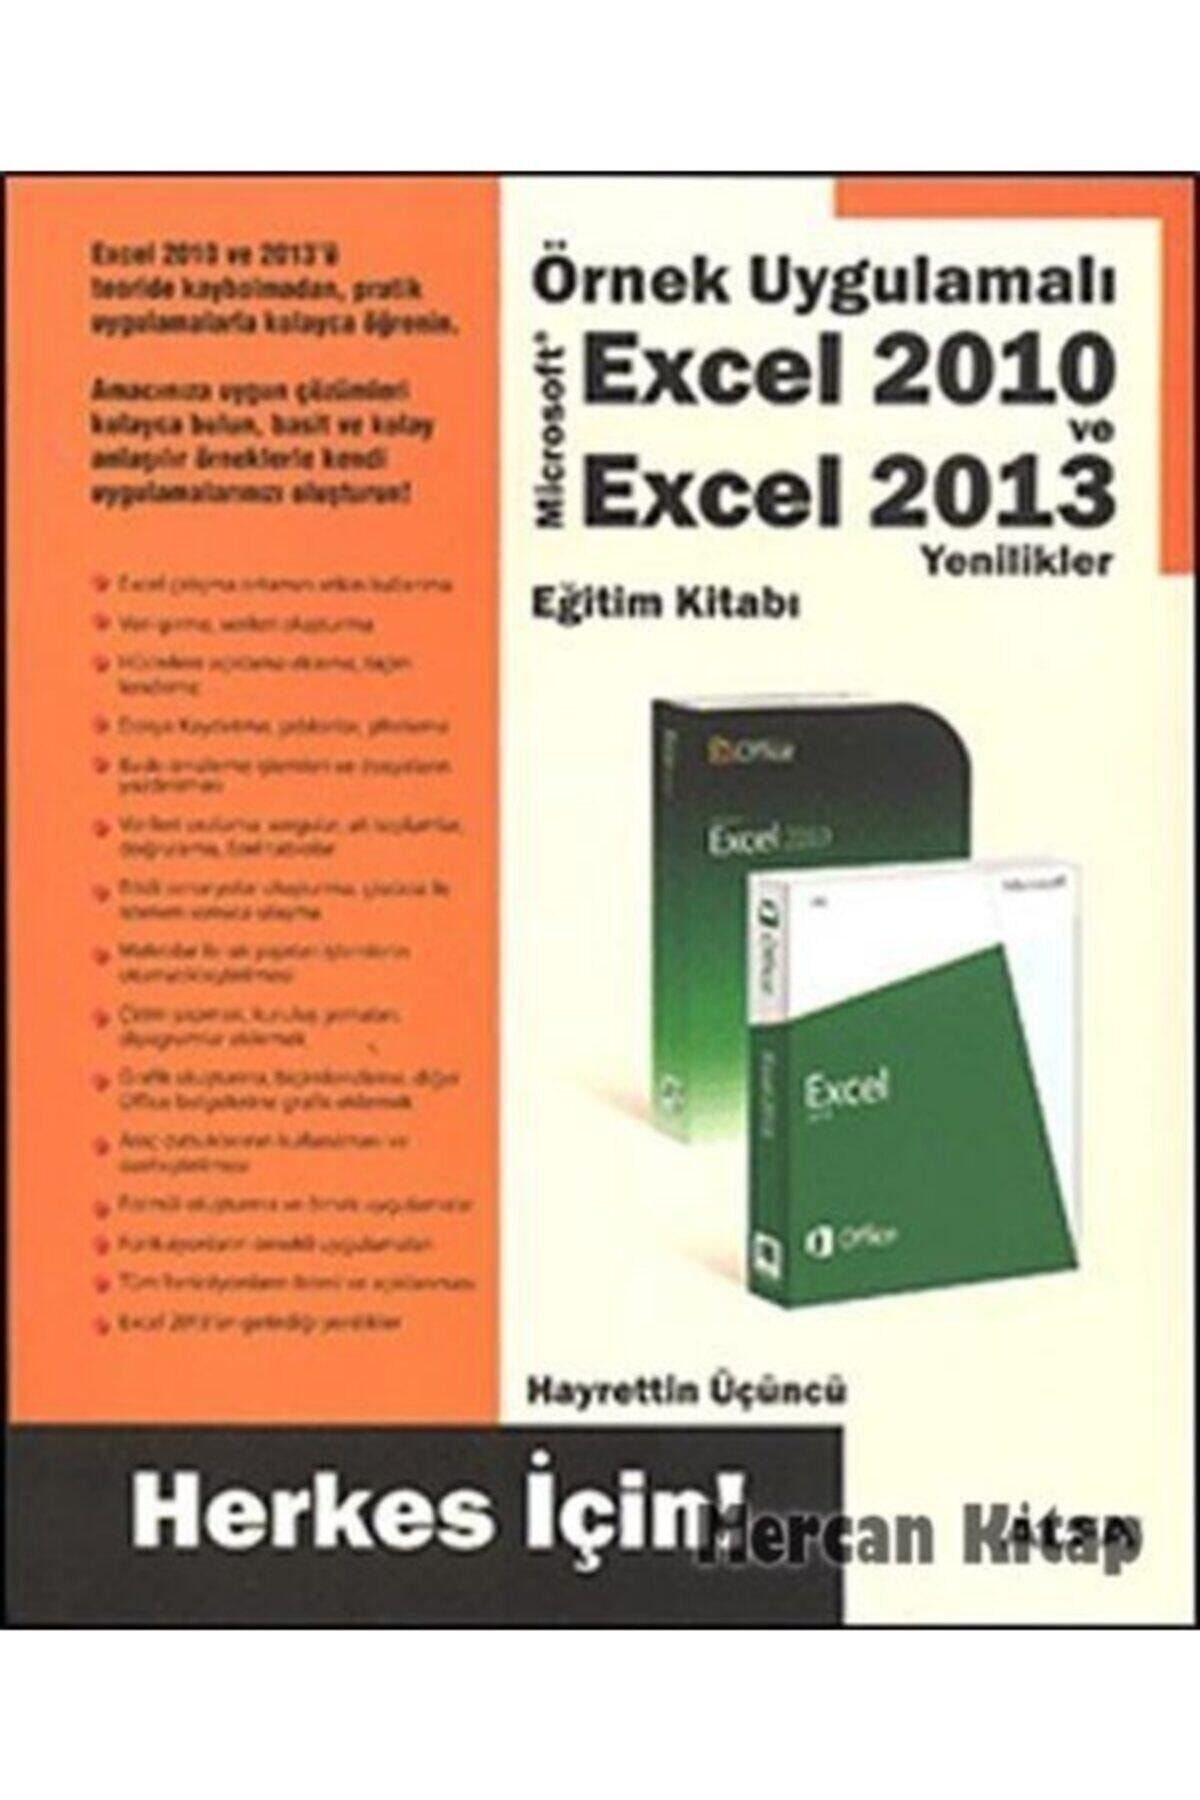 Alfa Yayınları Örnek Uygulamalı Excel 2010 Ve Excel 2013 Yenilikler Eğitim Kitabı